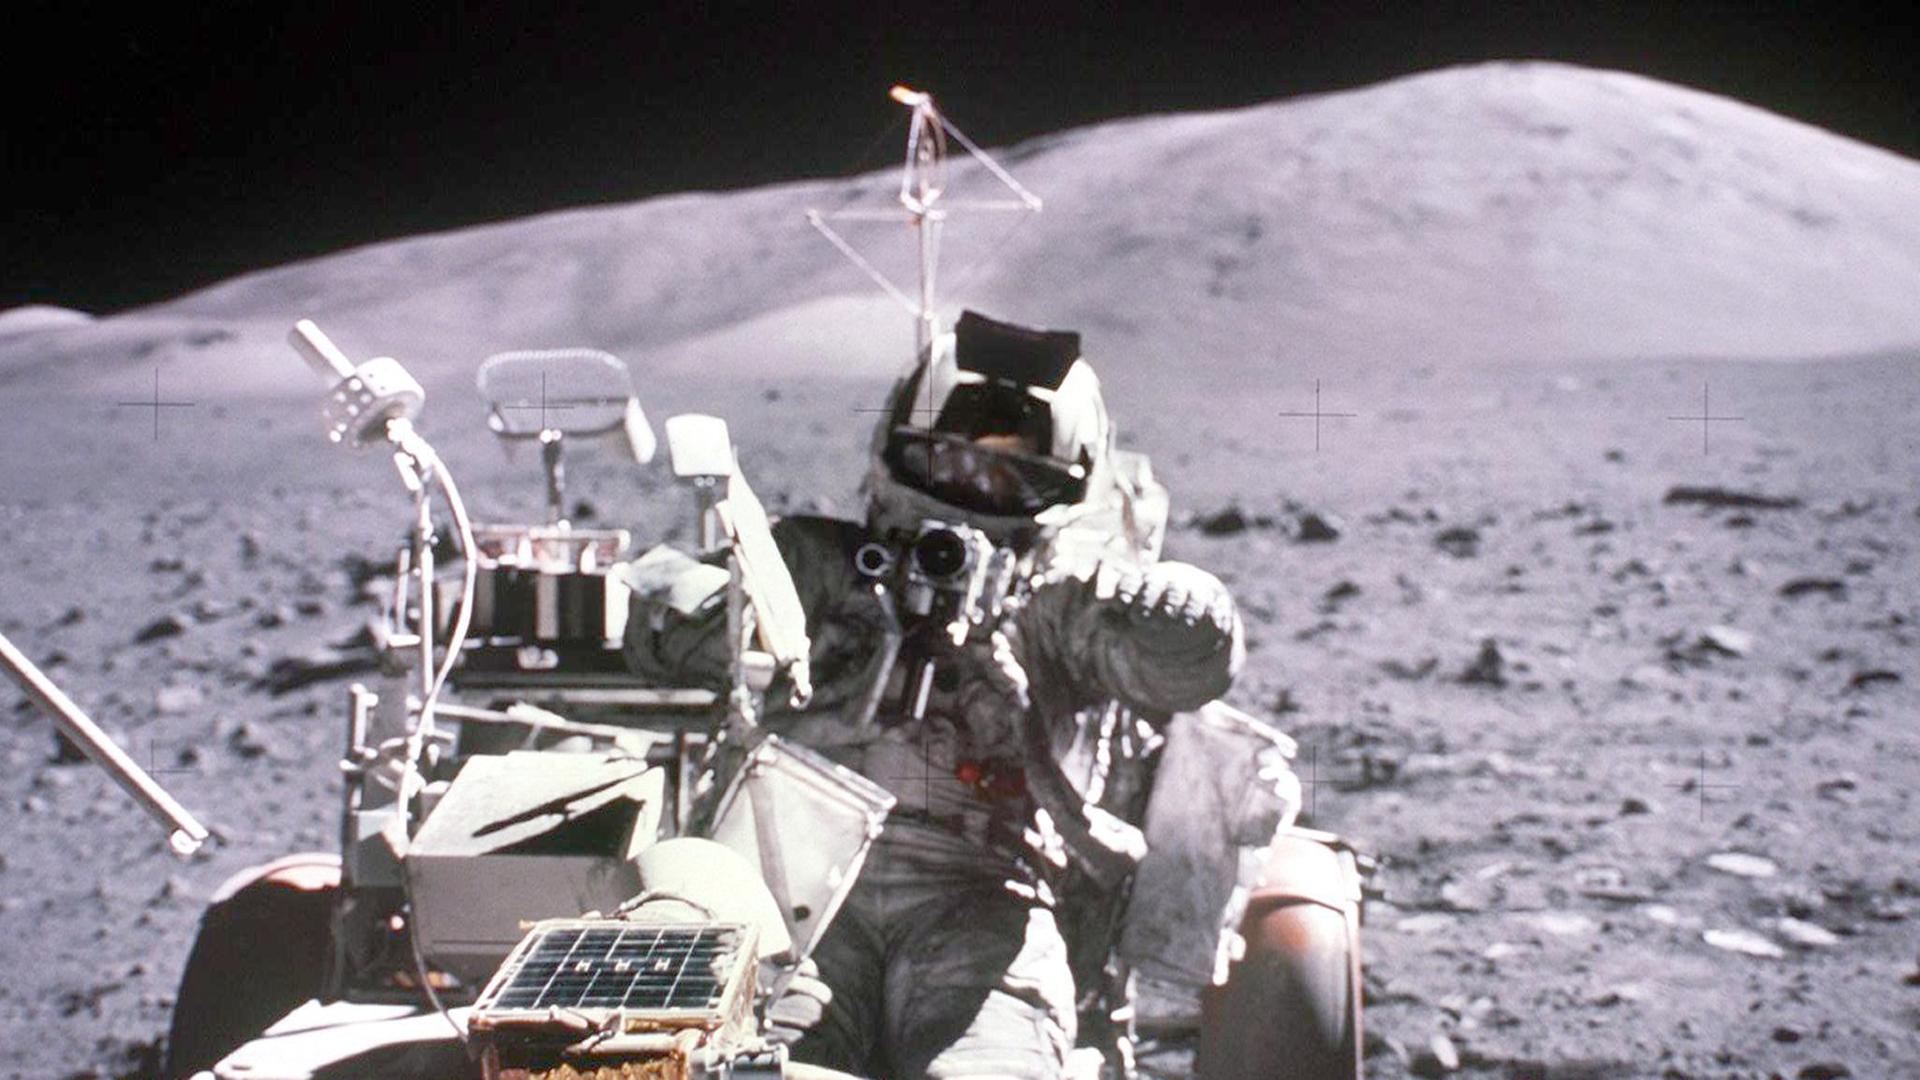 dDas Archivbild vom 13.12.1972 zeigt den Astronauten Harrison H. Schmitt im Mondauto